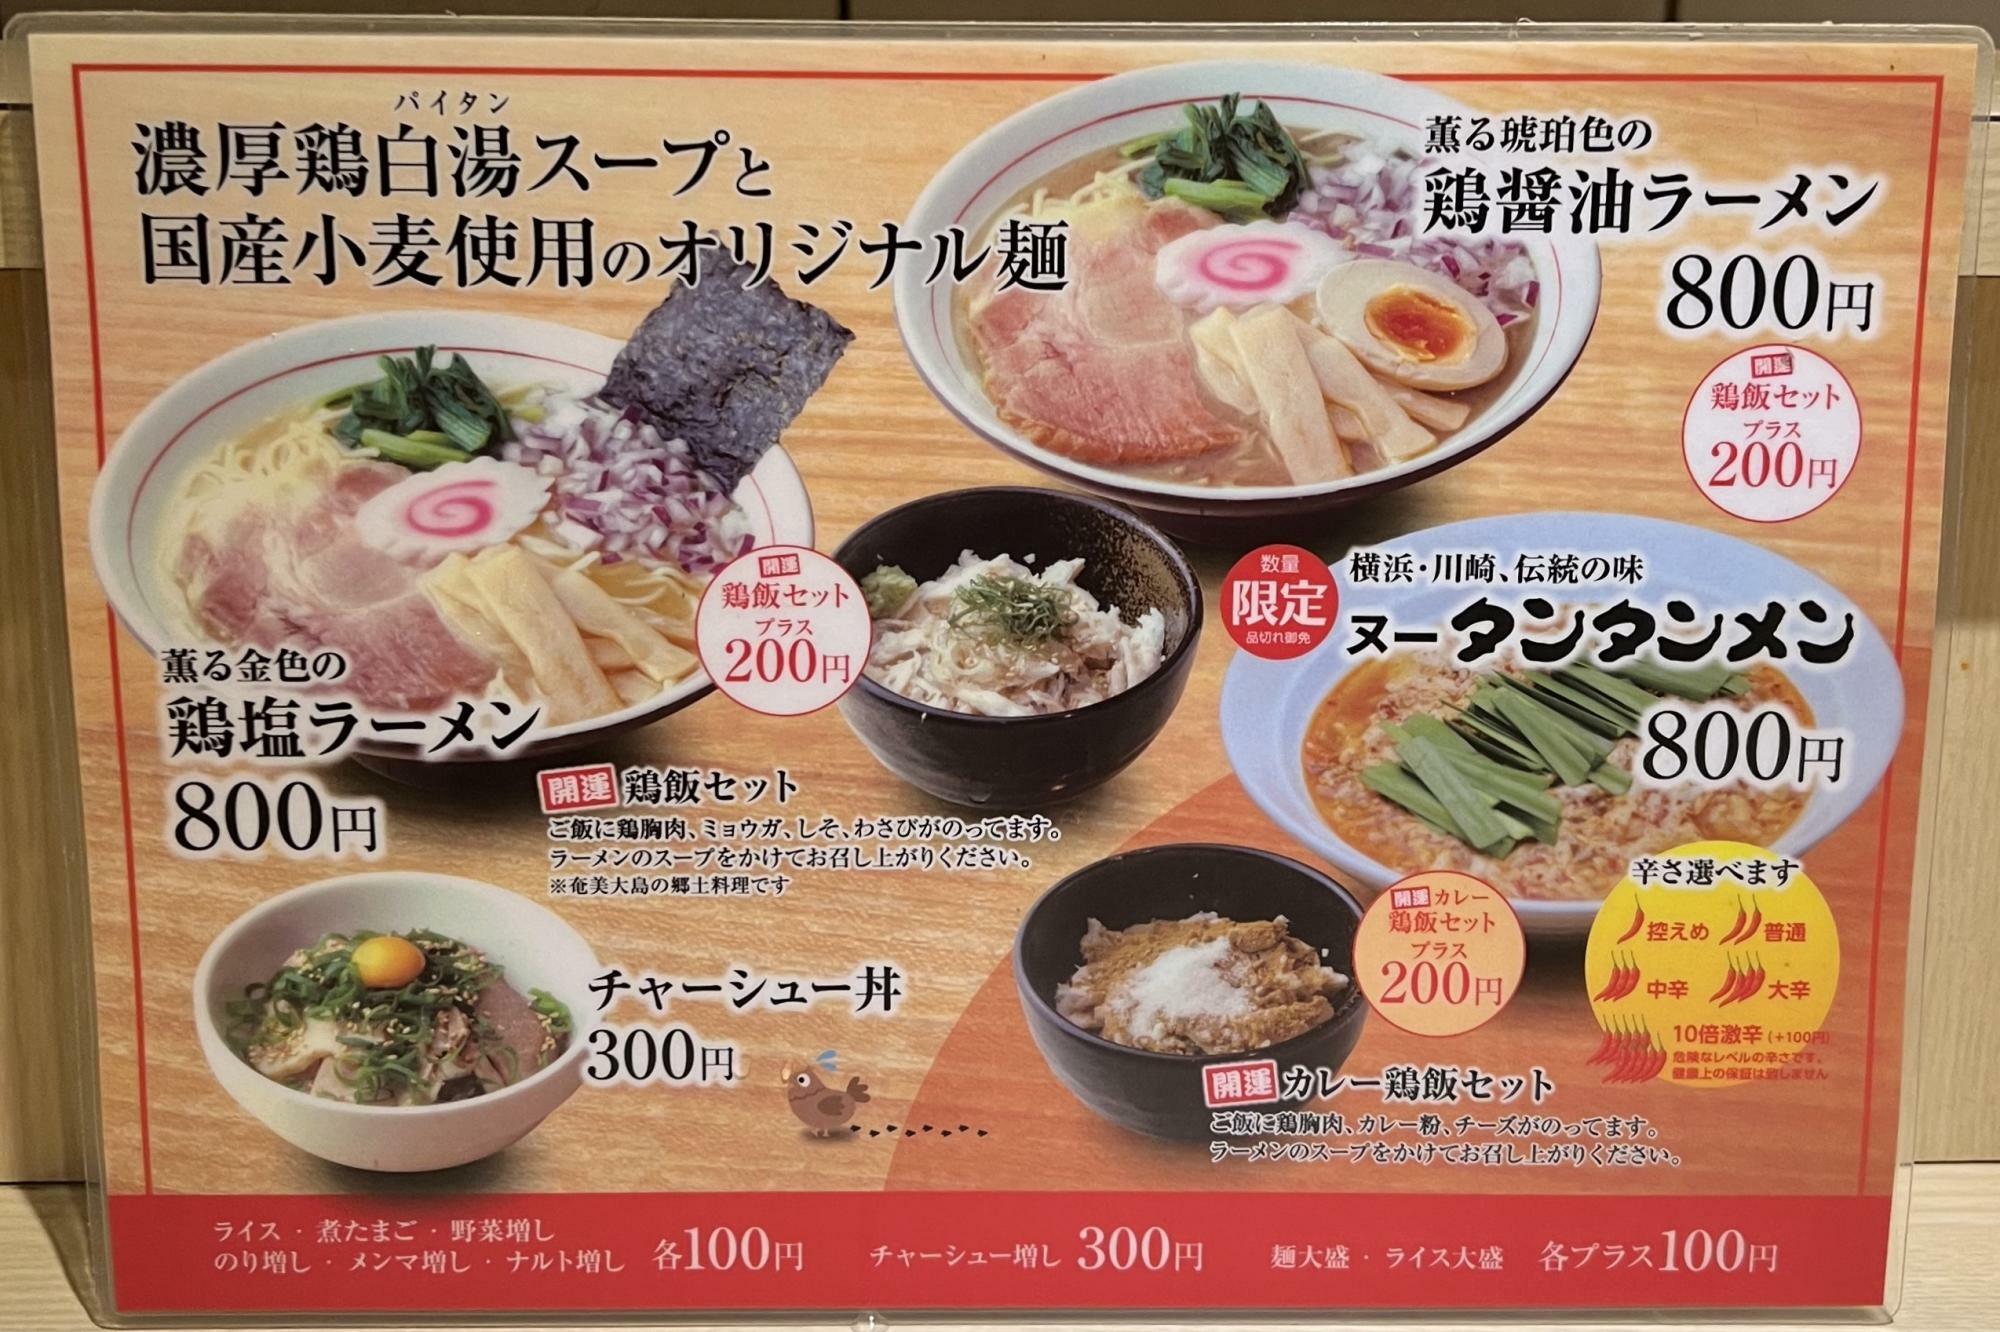 カレー鶏飯が200円とはなかなかお値打ちですね。